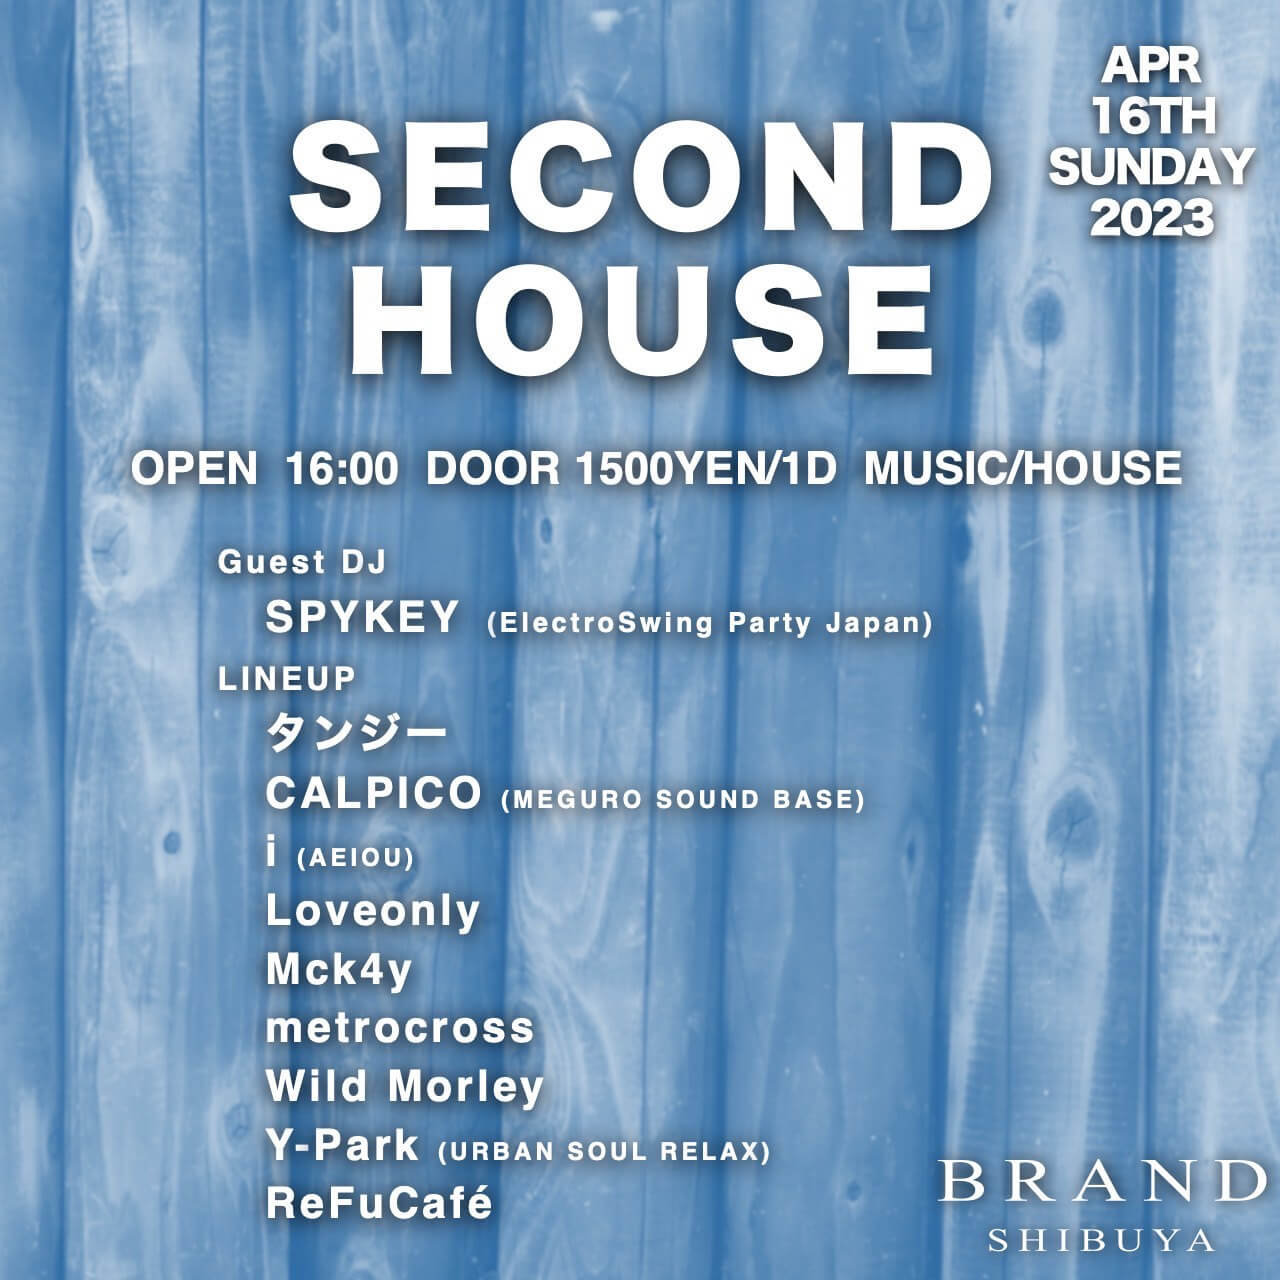 SECOND HOUSE 2023年04月16日（日曜日）に渋谷 クラブのBRAND SHIBUYAで開催されるHOUSEイベント